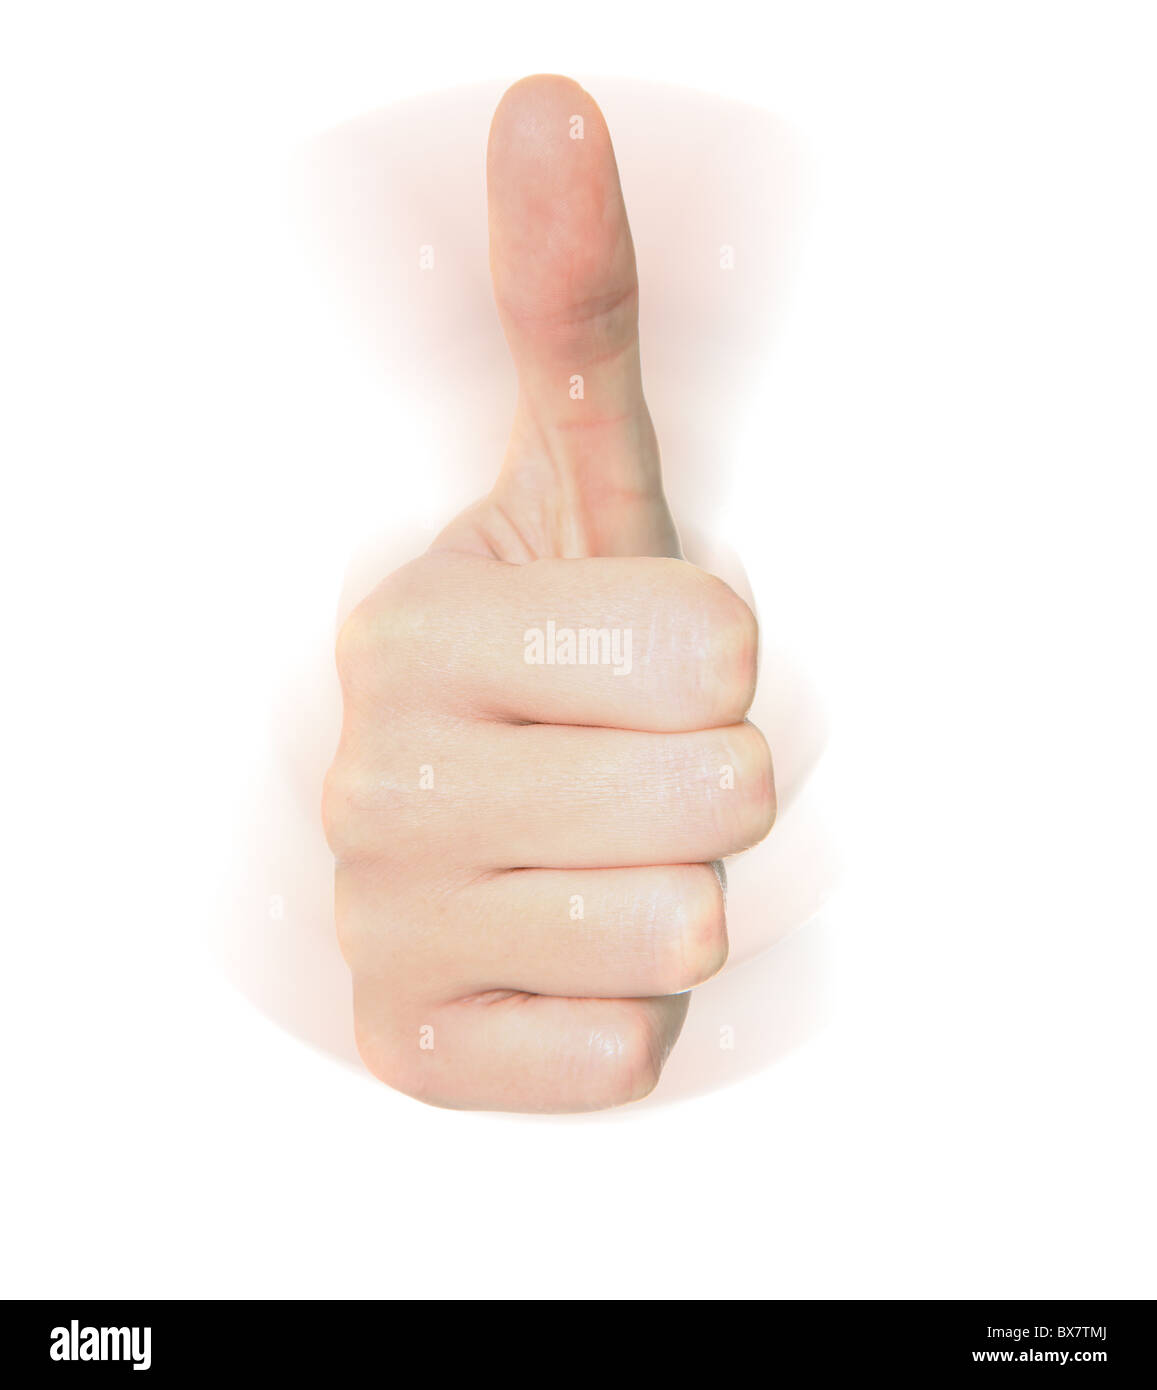 Portrait de la main Thumbs up sign. Le tout sur fond blanc. Banque D'Images